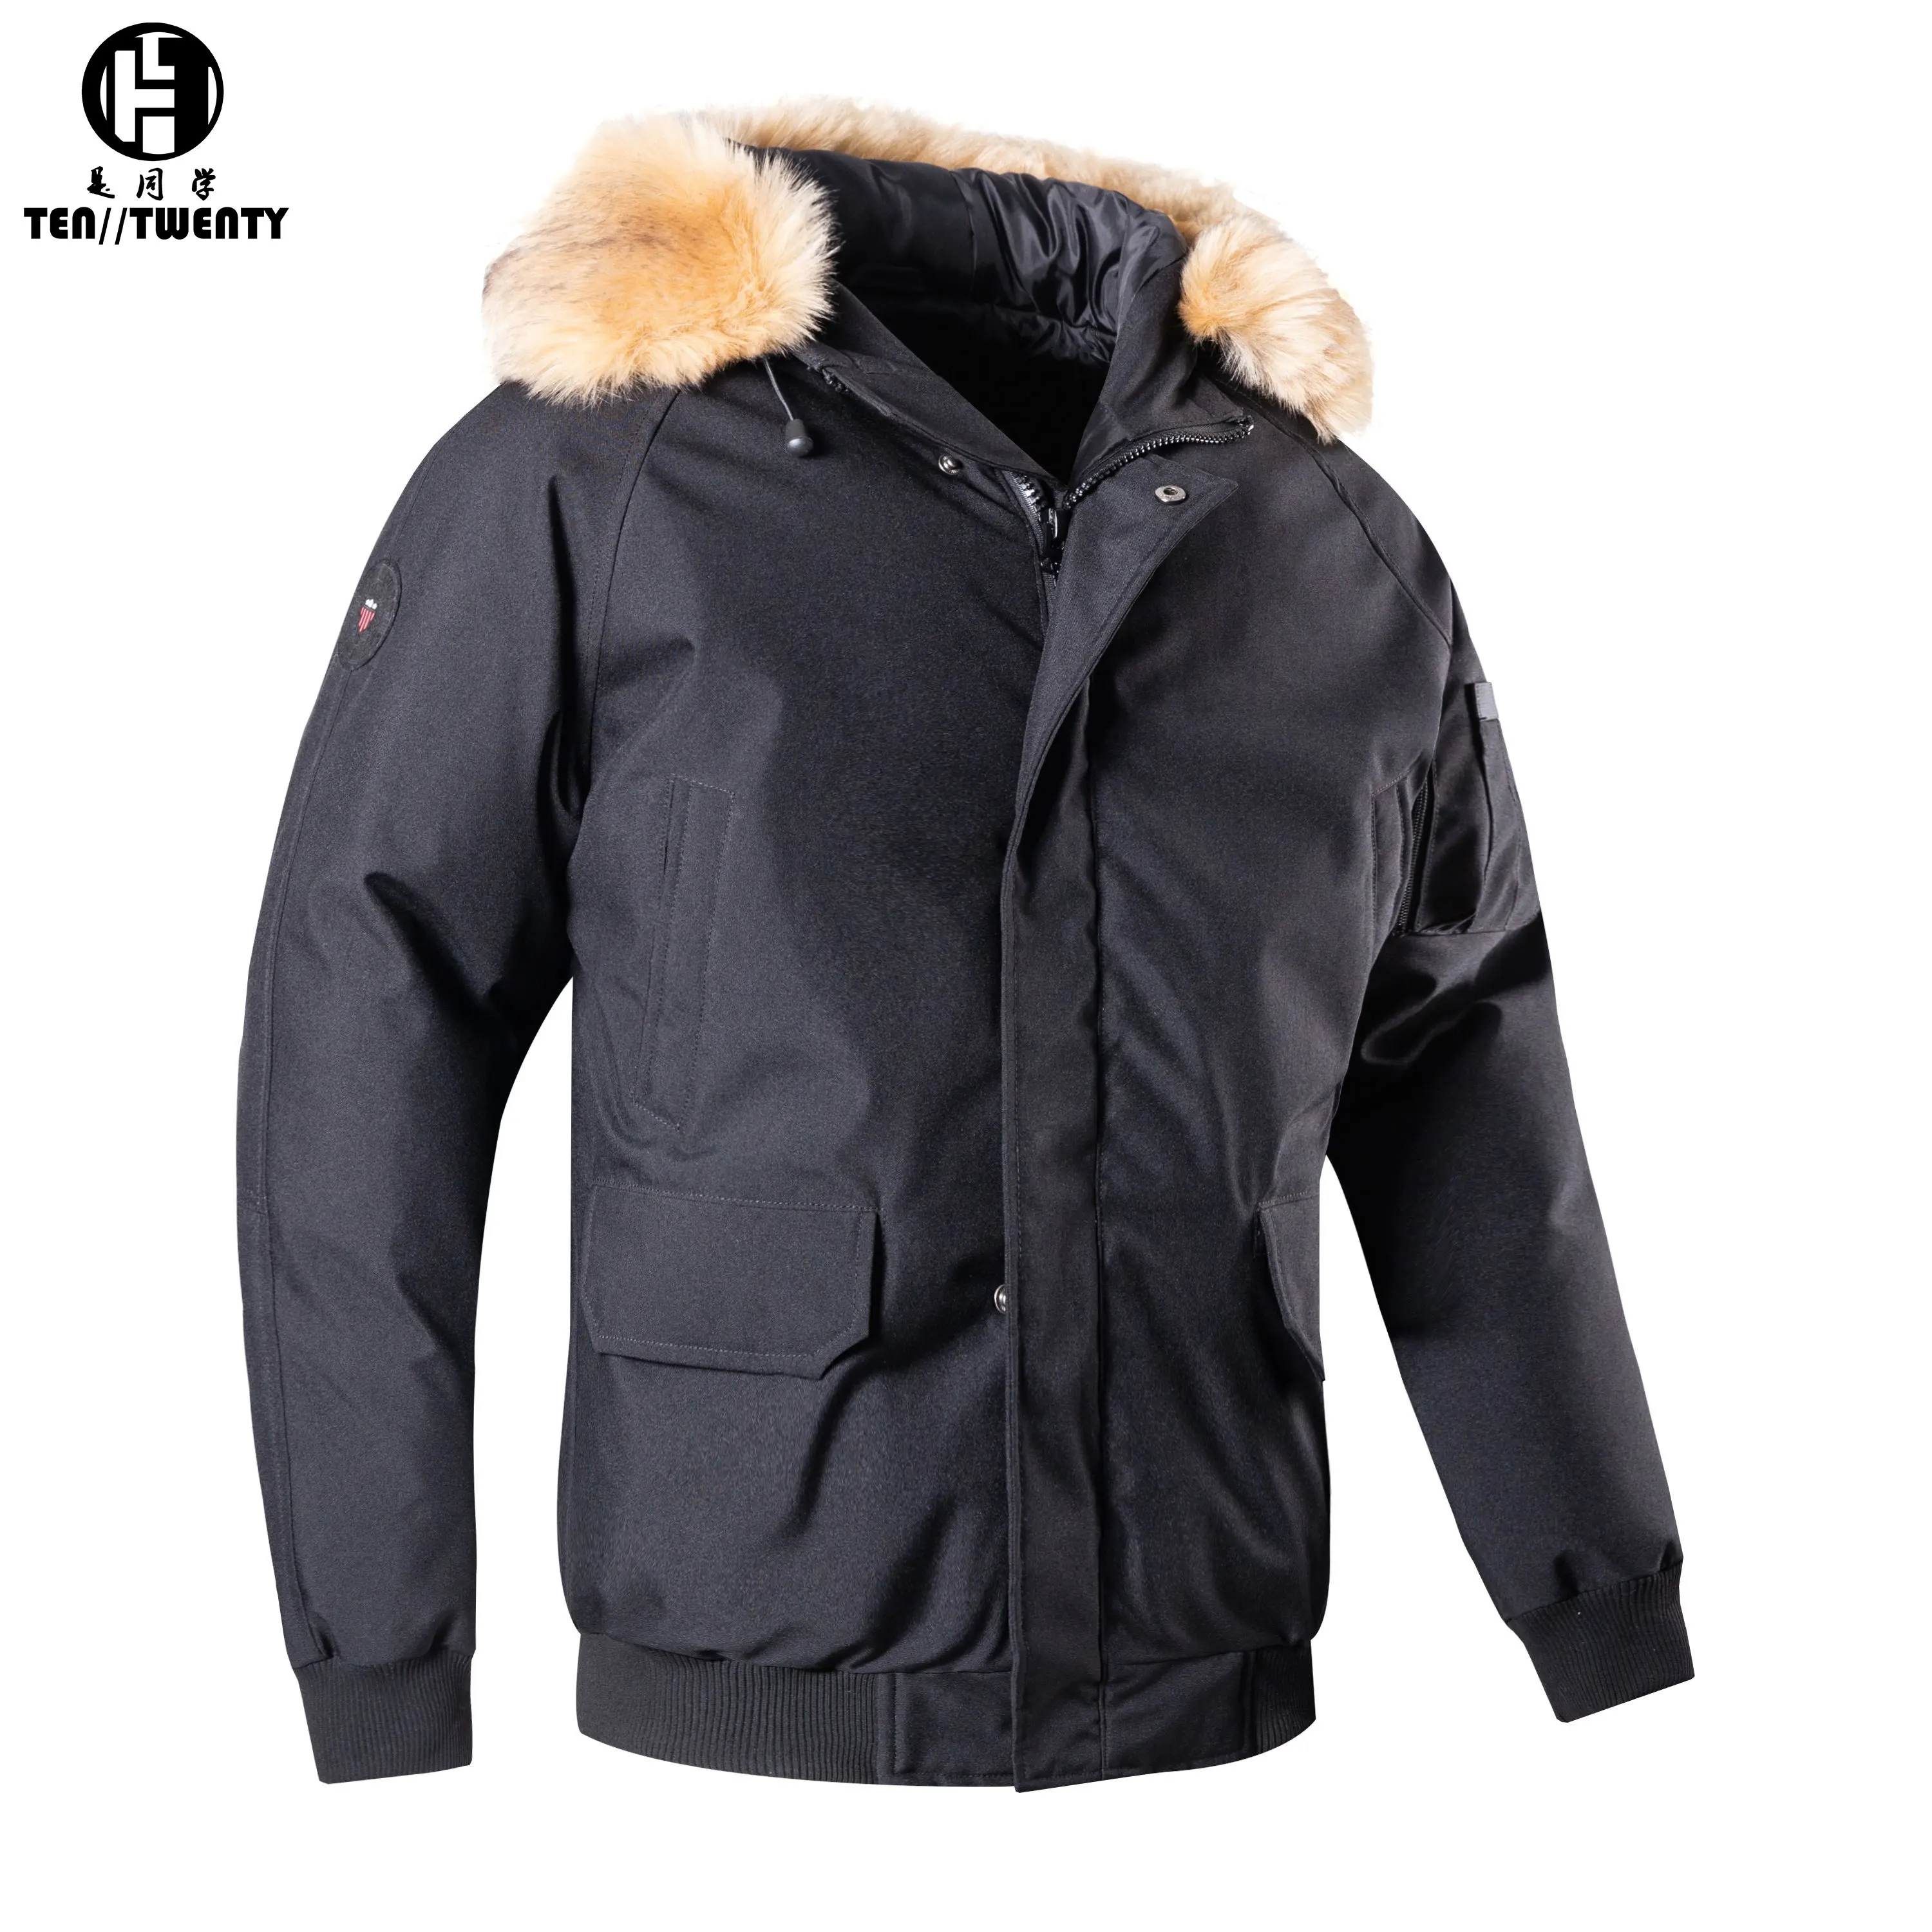 कस्टम सर्दियों के सामने बड़े पर्ची जेब puffer जैकेट पुरुषों आकस्मिक हटाया जा सकता है फर डाकू पुरुषों के नीचे जैकेट